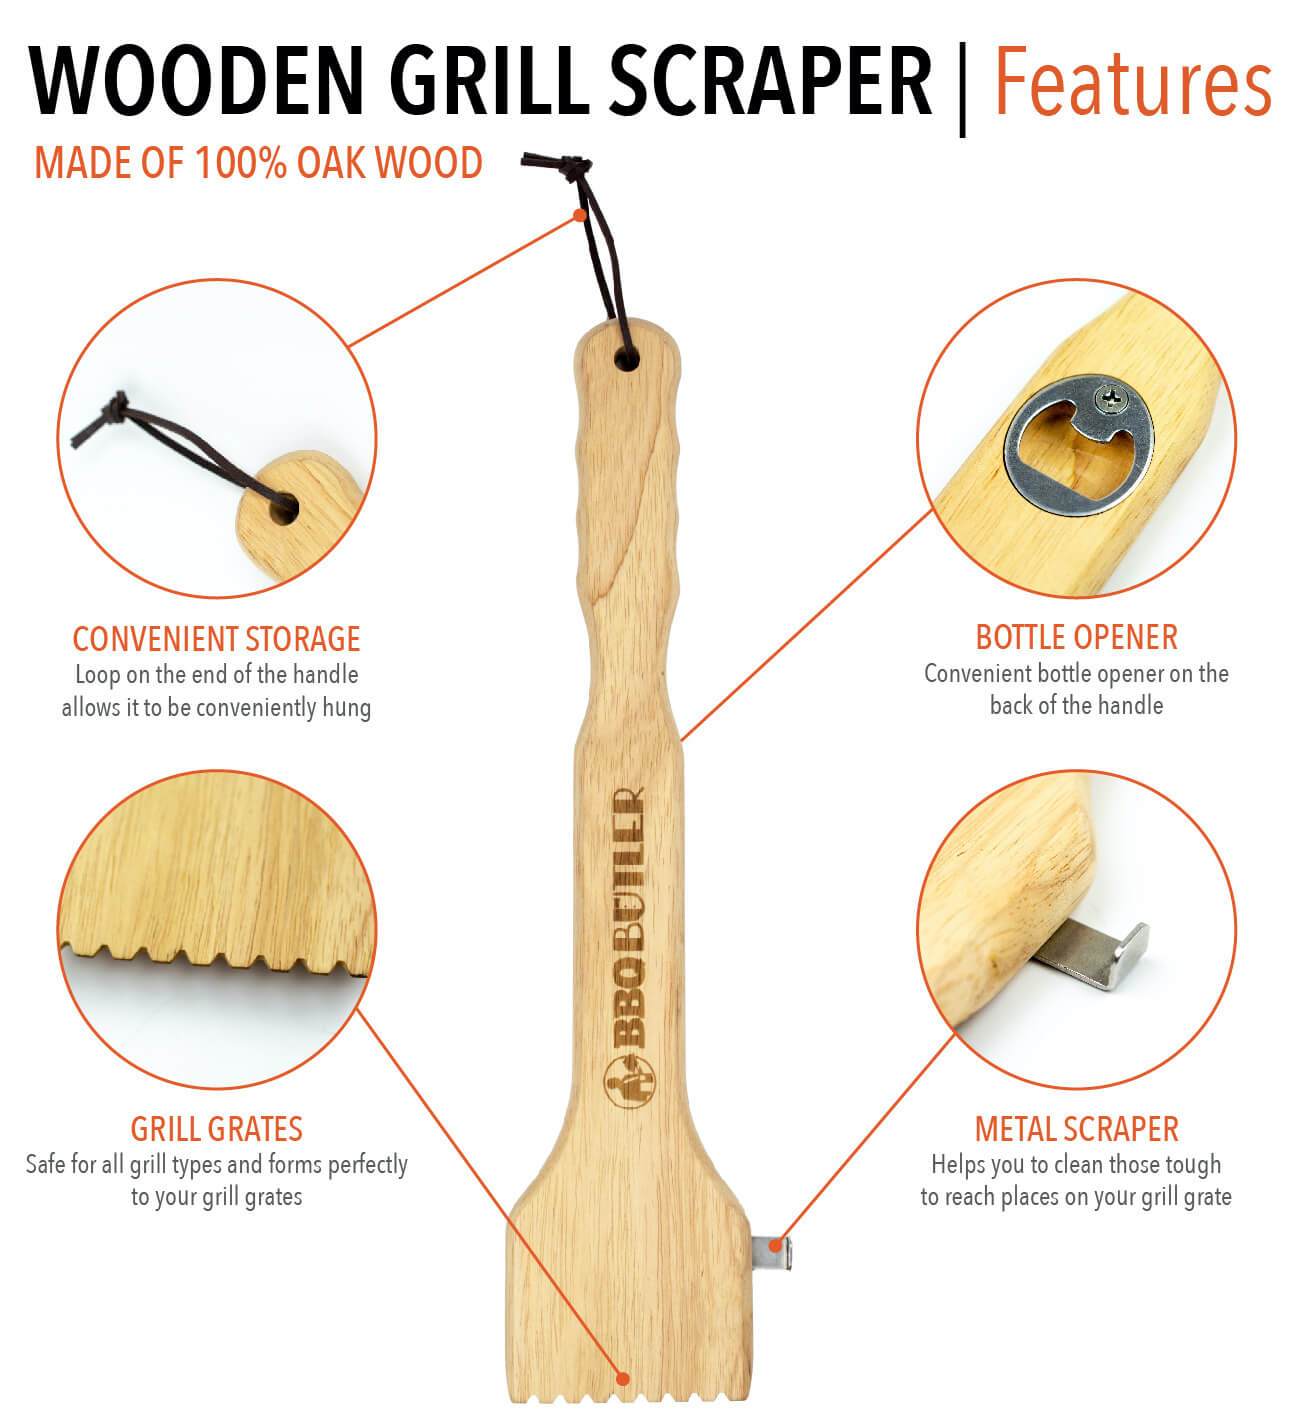 Wooden Grill Scraper